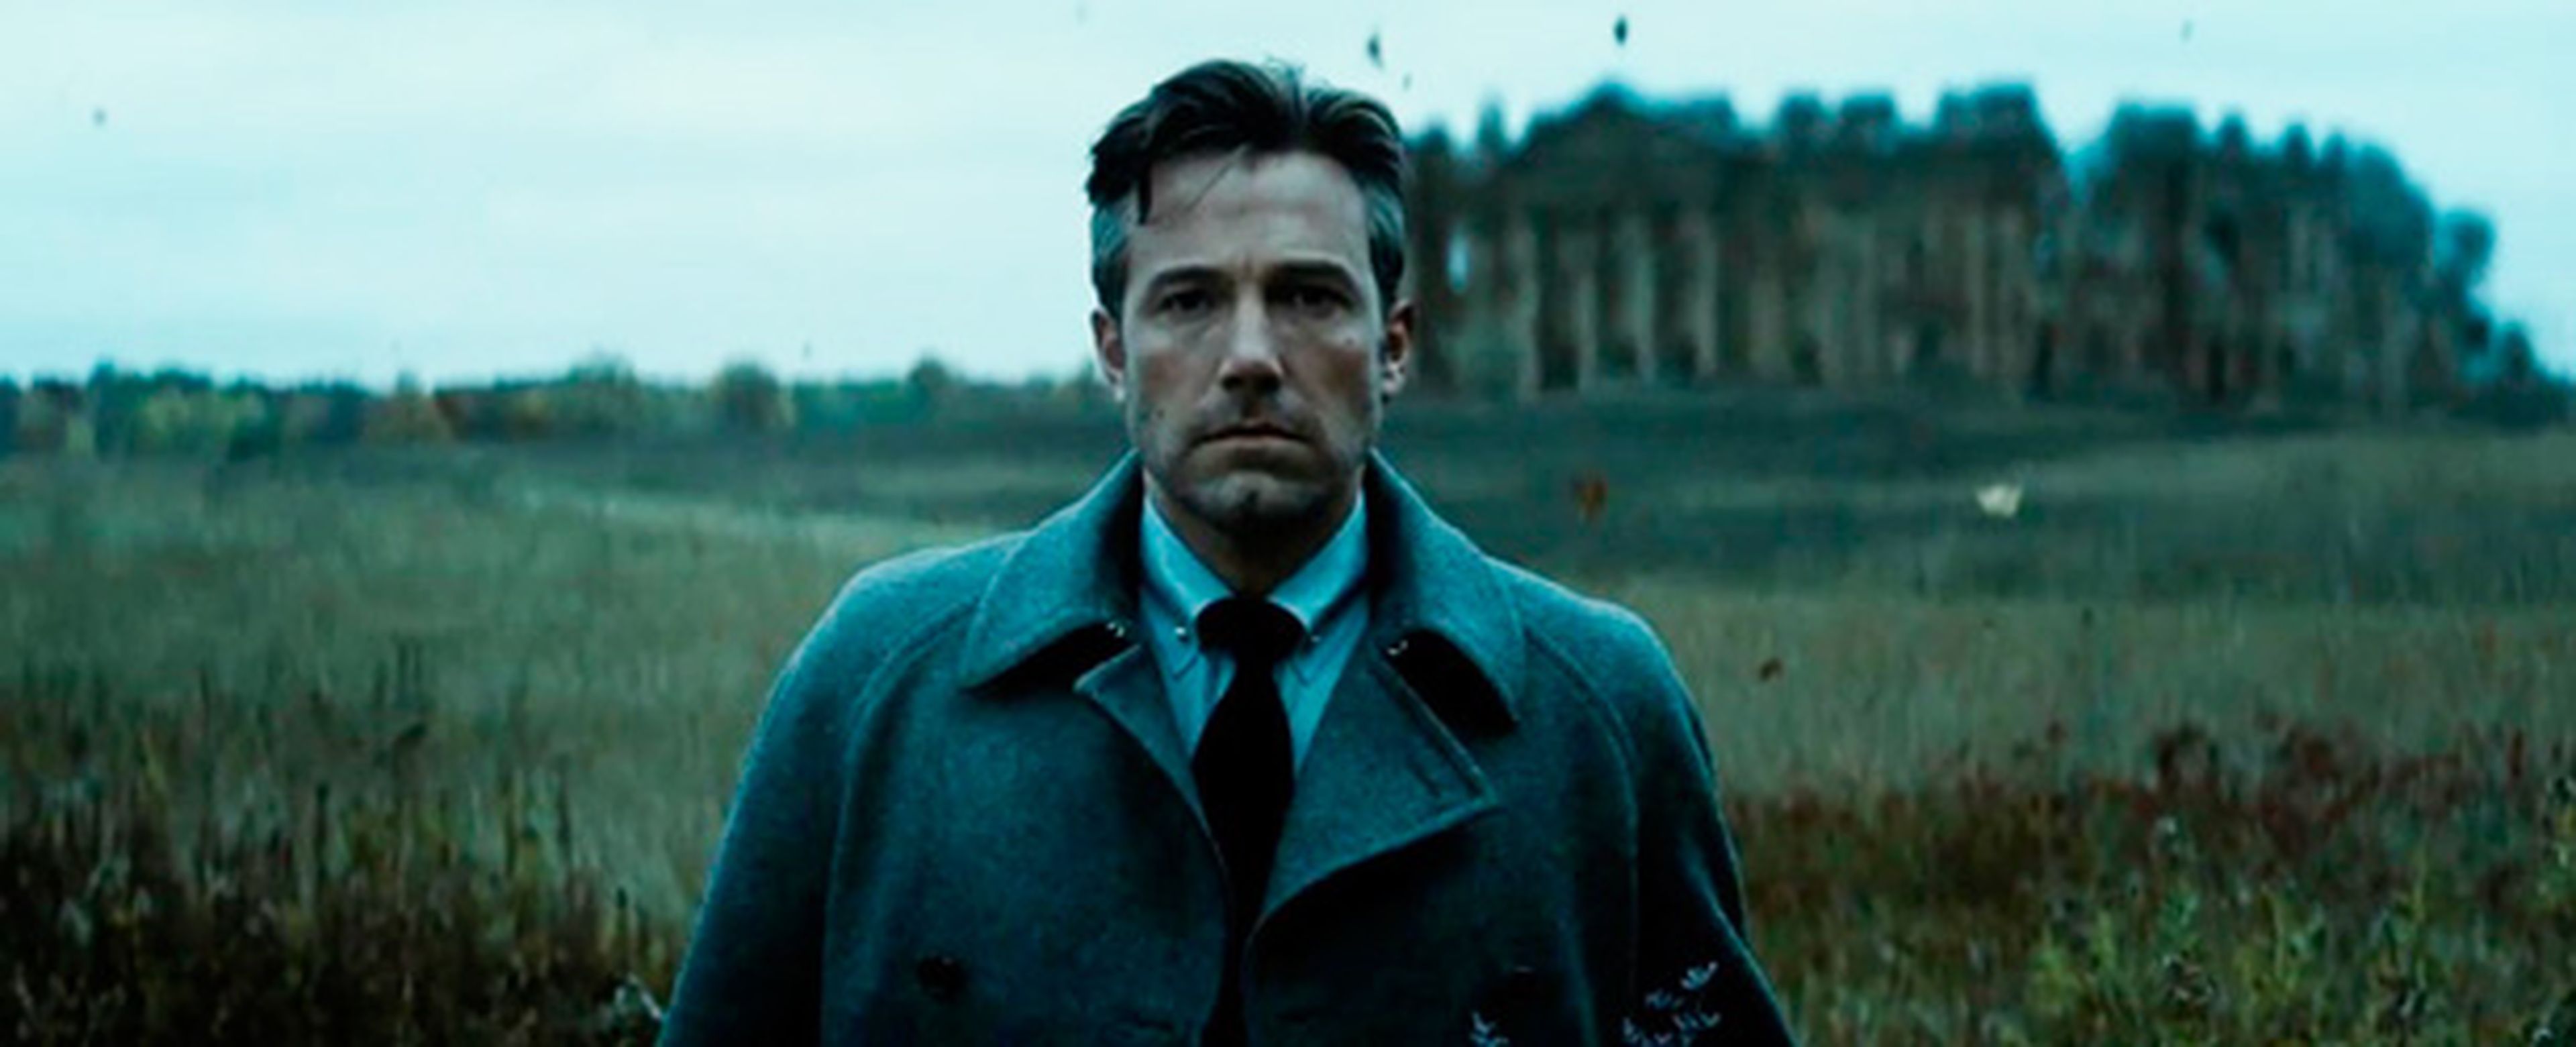 Nueva película de Batman - Ben Affleck dice que será una historia original